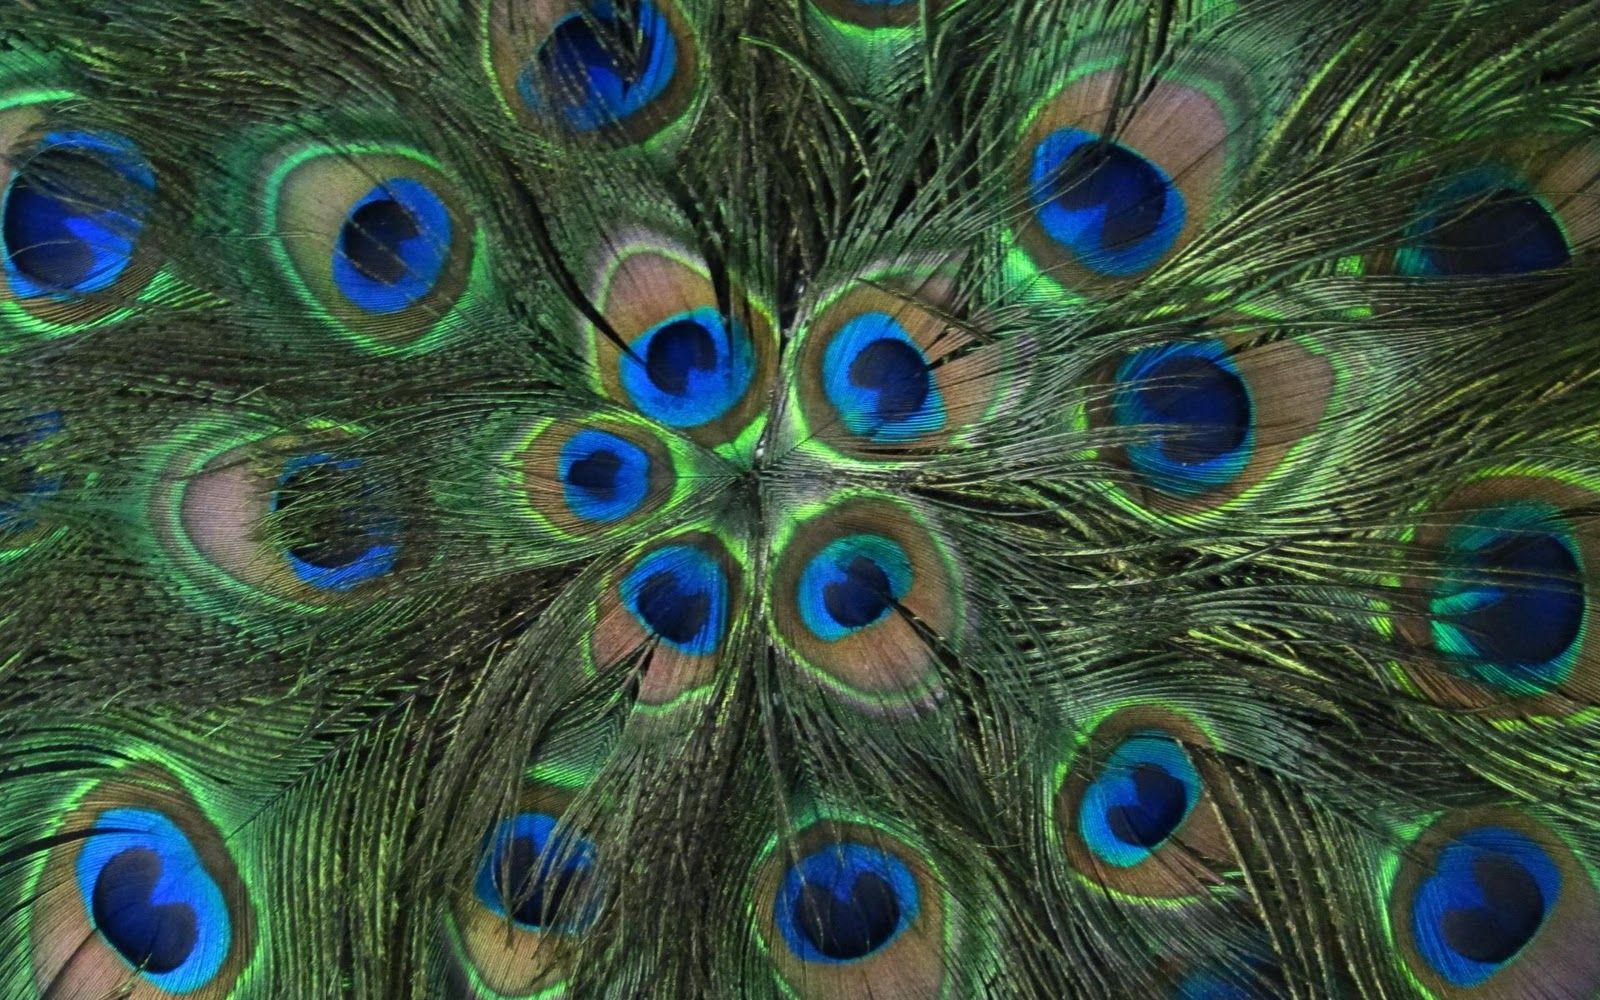 Peacock Feather Wallpapers Widescreen ~ Sdeerwallpapers